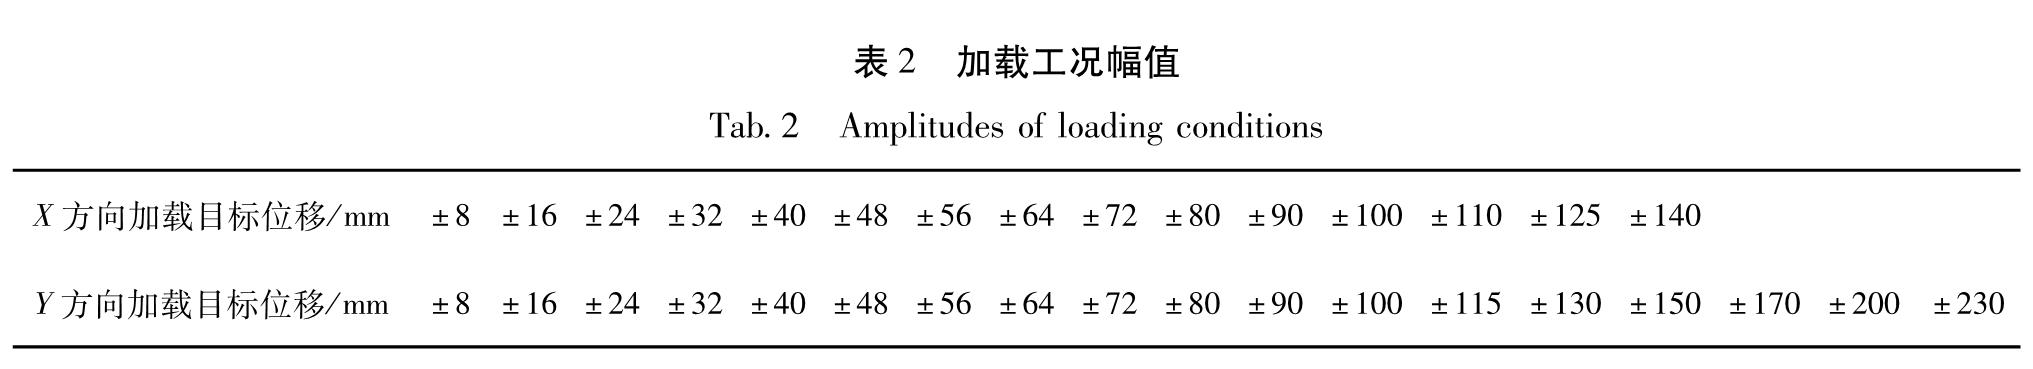 表2 加载工况幅值<br/>Tab.2 Amplitudes of loading conditions